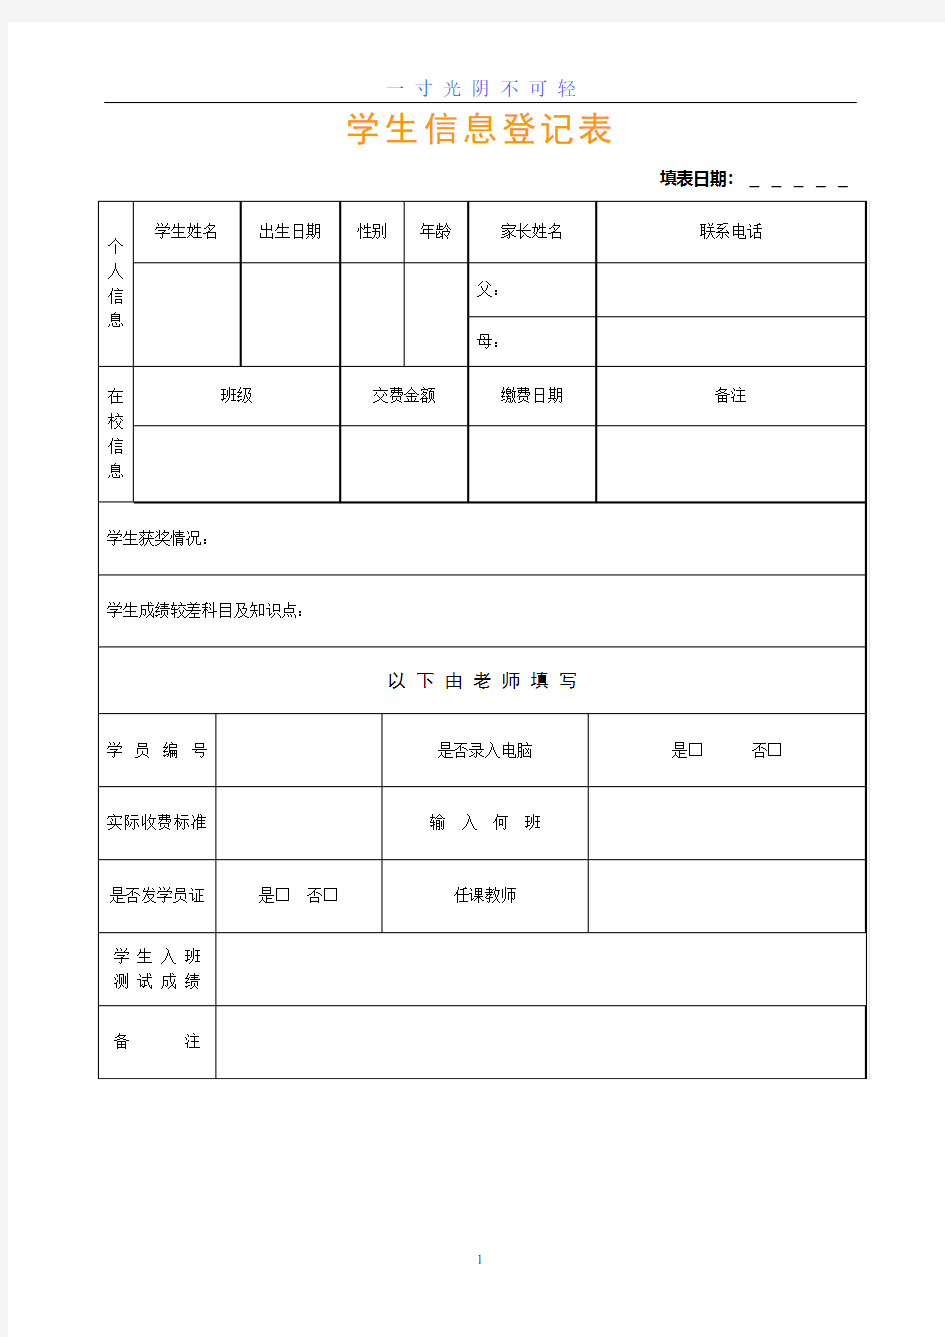 学生信息登记表.pdf